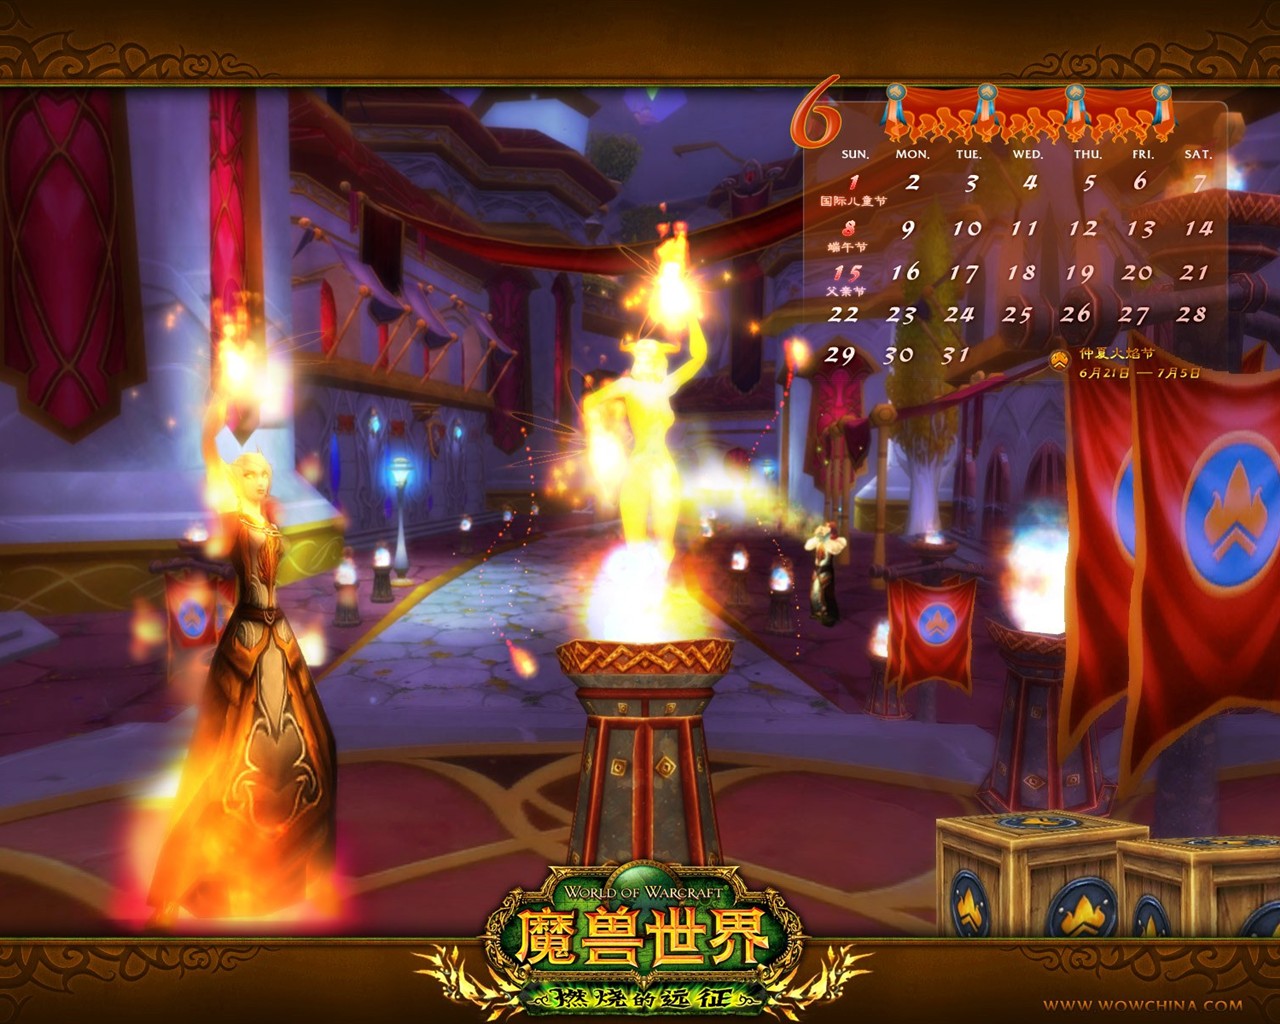 Мир Warcraft: официальные обои The Burning Crusade в (2) #24 - 1280x1024